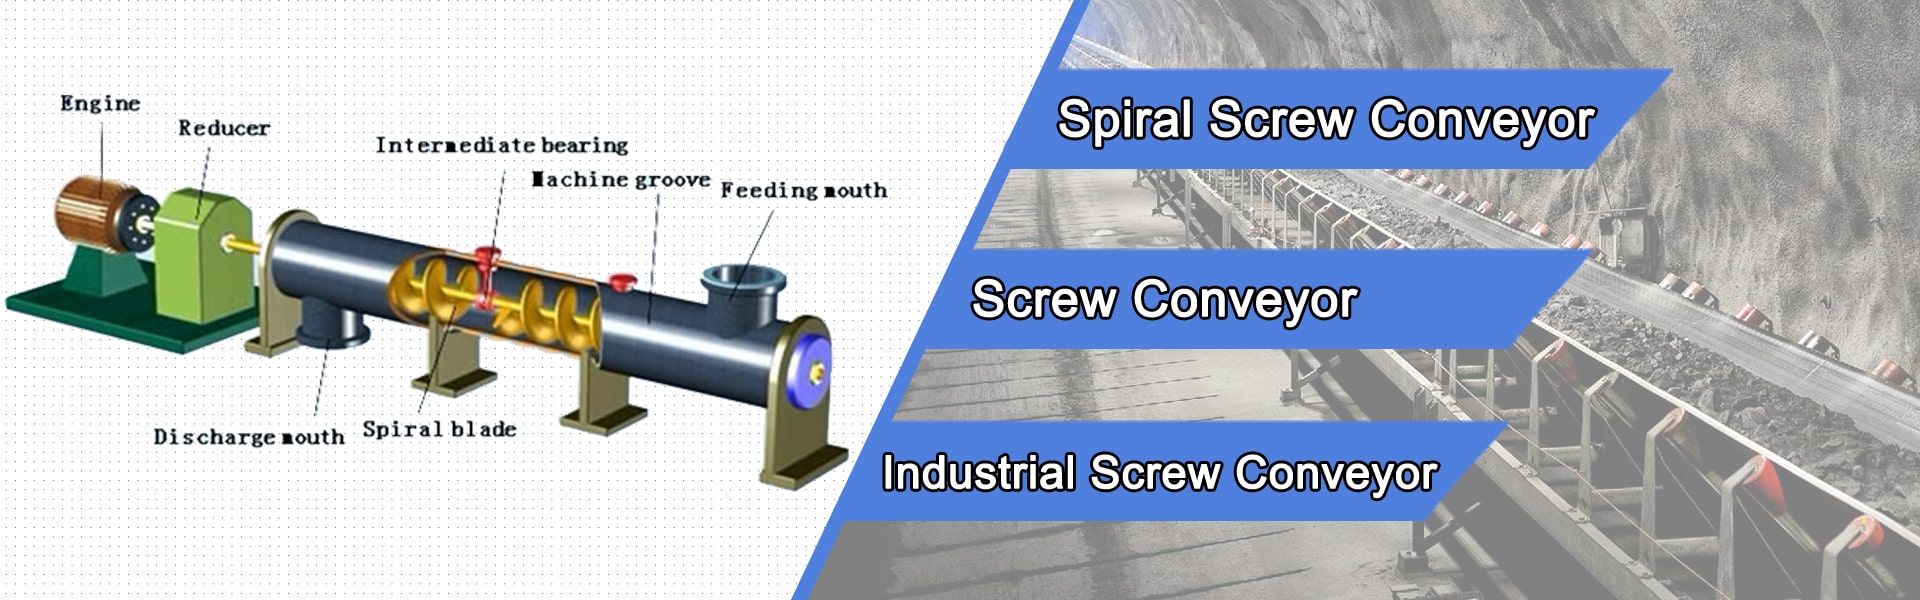 Spiral Screw Conveyor